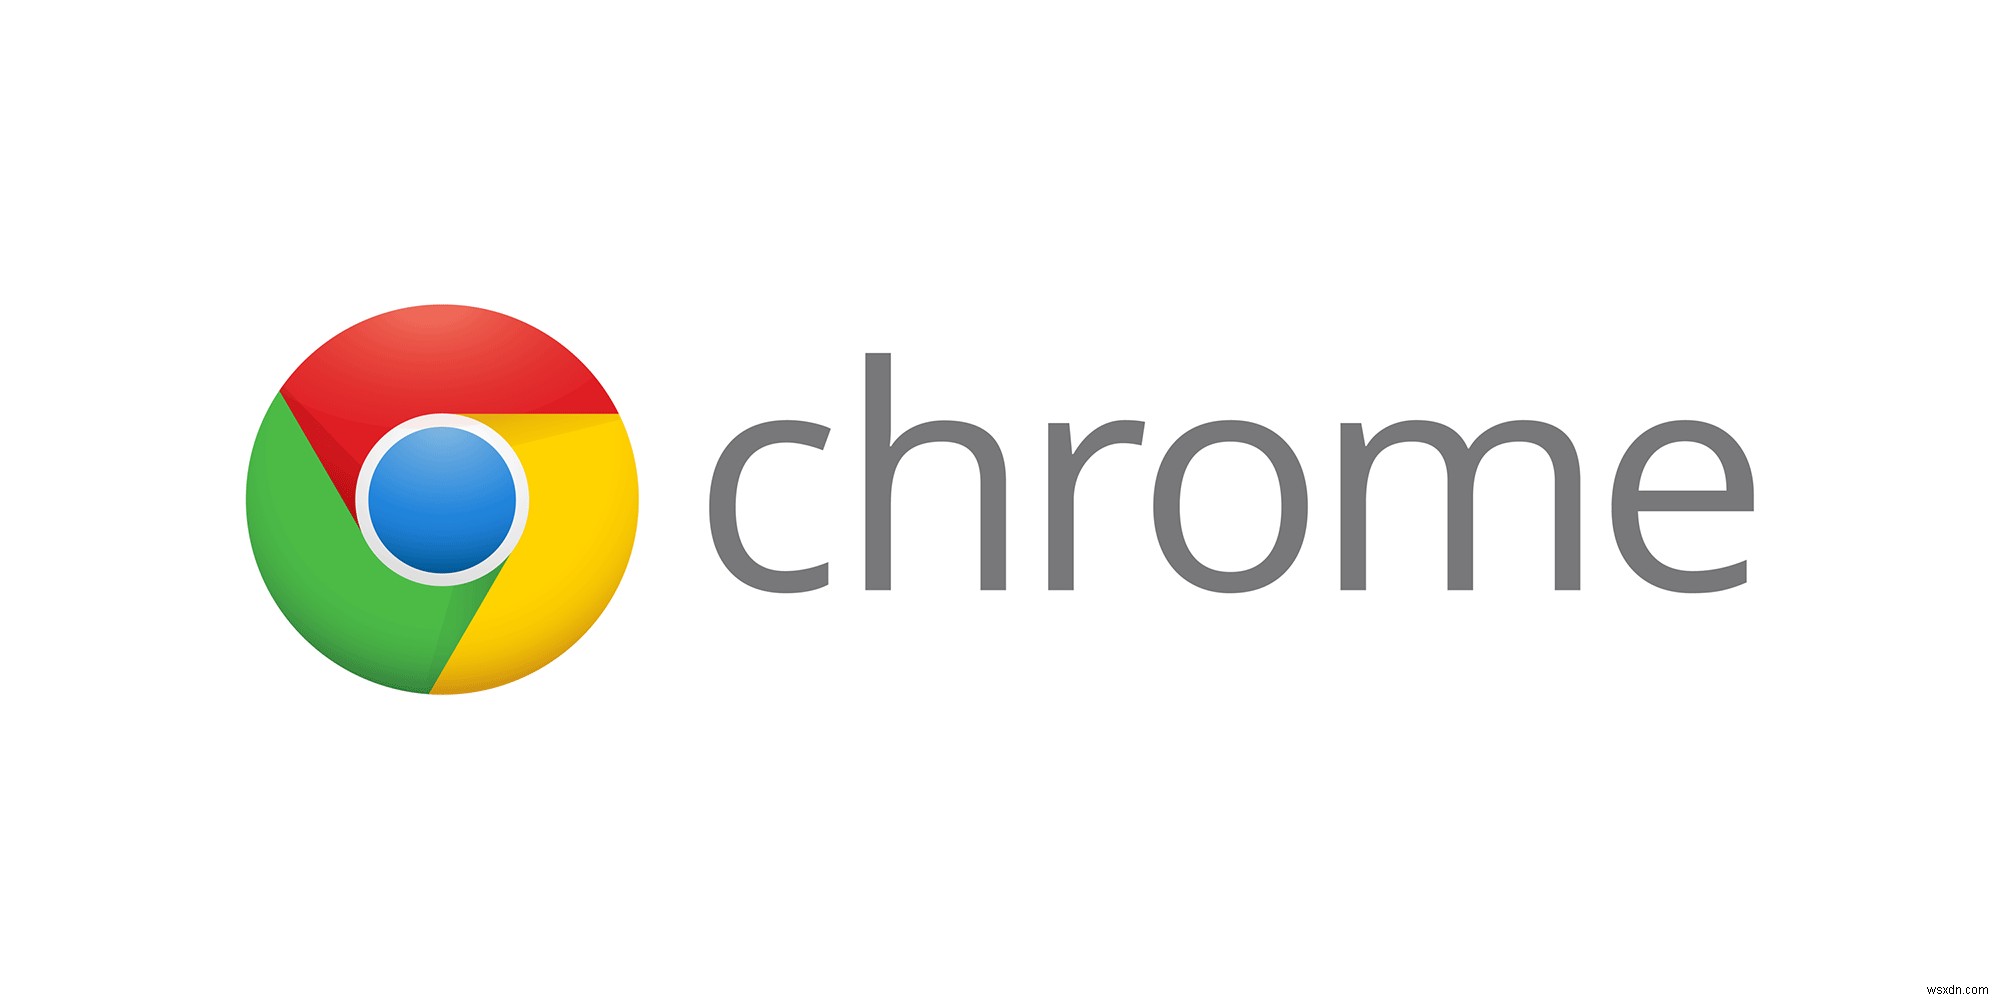 Cách ngăn Google Chrome chạy trong nền trên Windows 10 